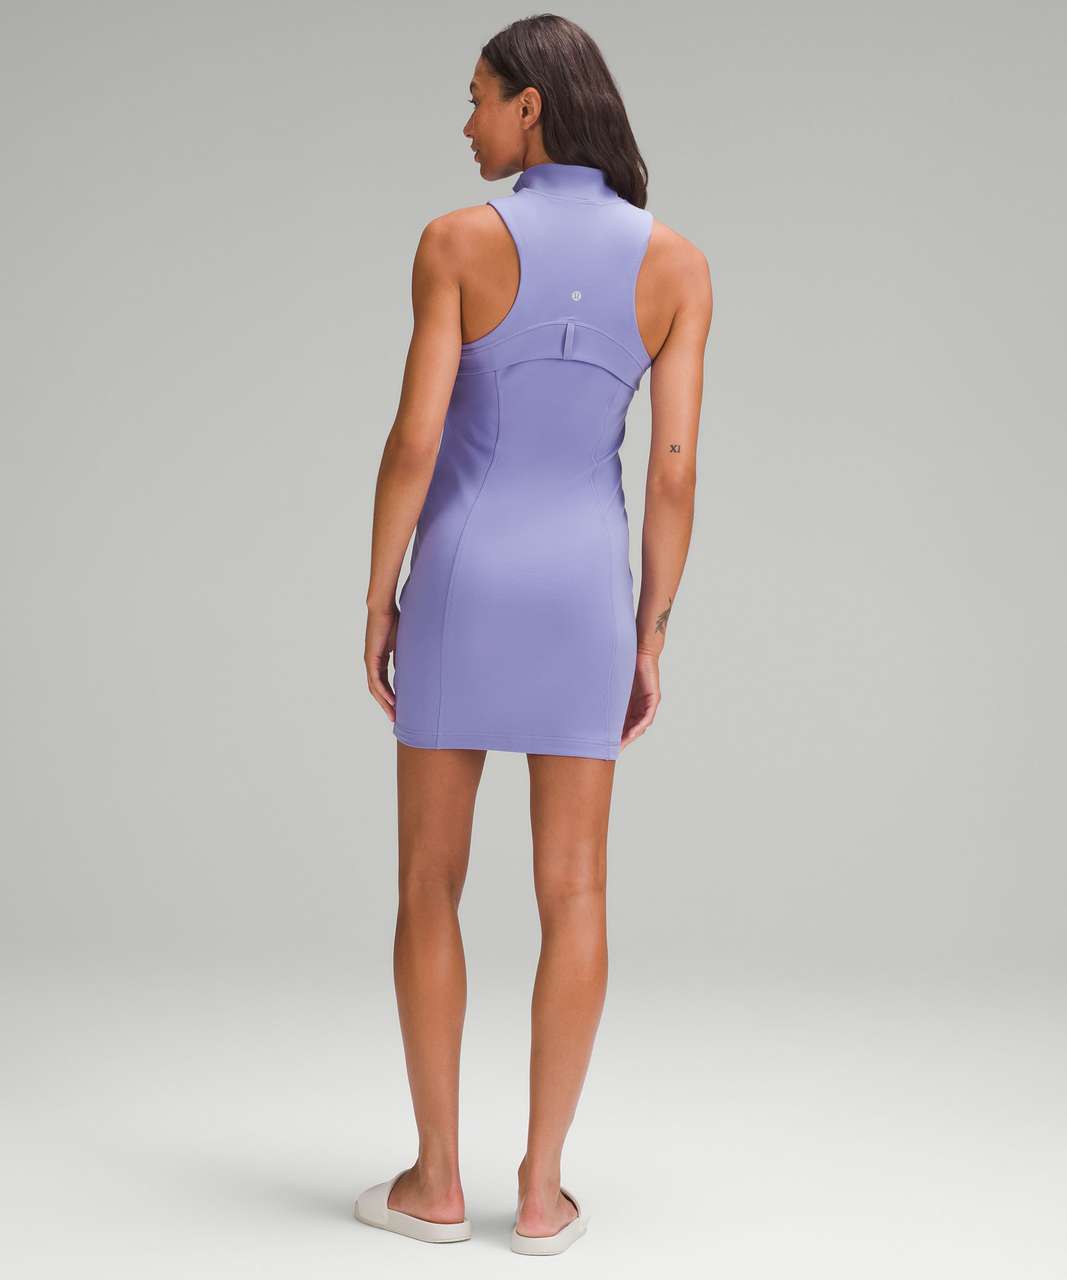 Lululemon Define Sleeveless Dress - Dark Lavender